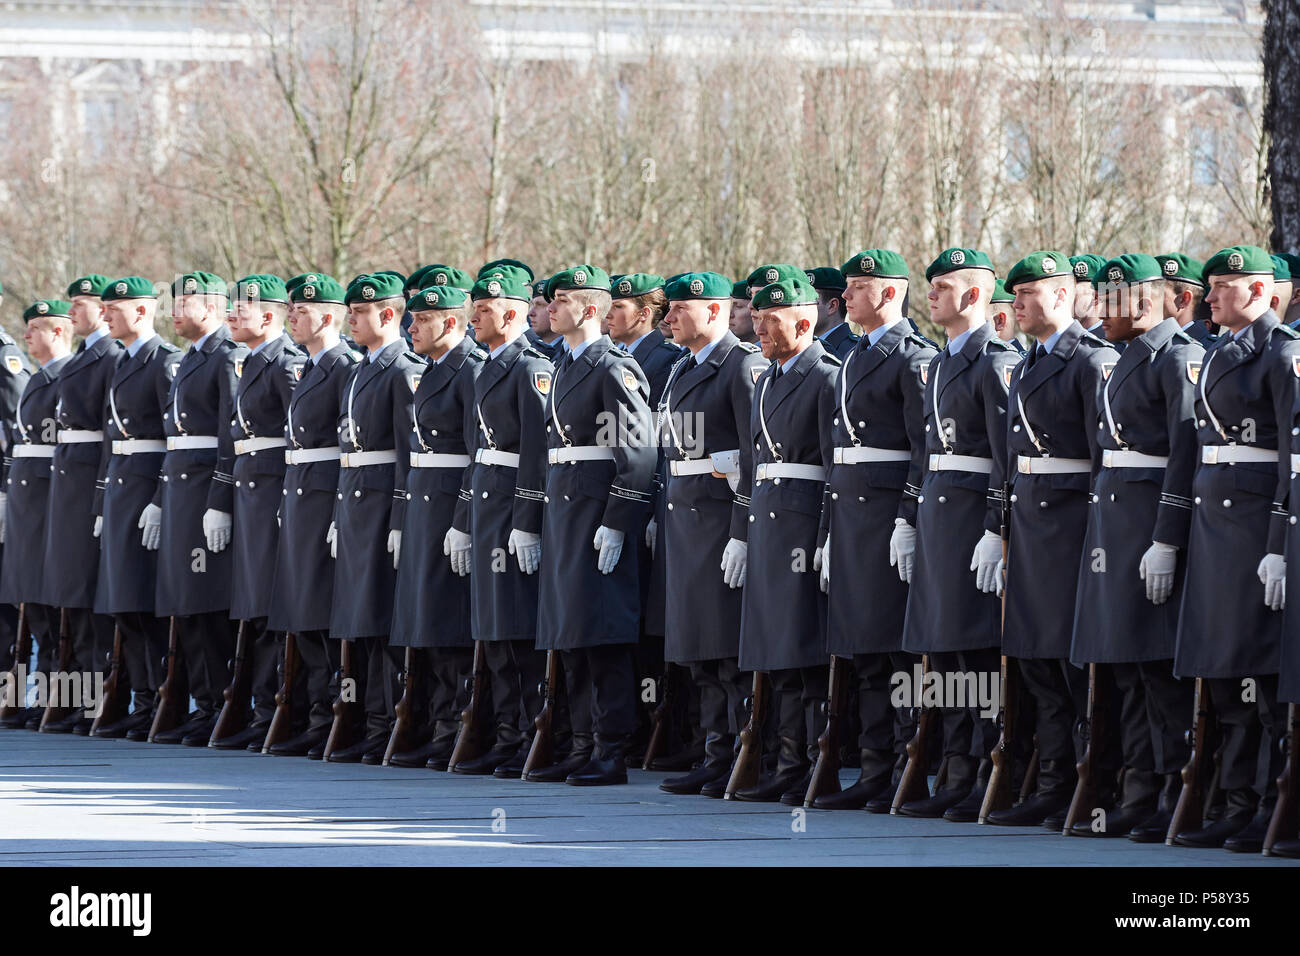 Berlín, Alemania - El batallón de la Guardia se encuentra en el patio de la Cancillería Federal, en ocasión de una visita de estado. Foto de stock